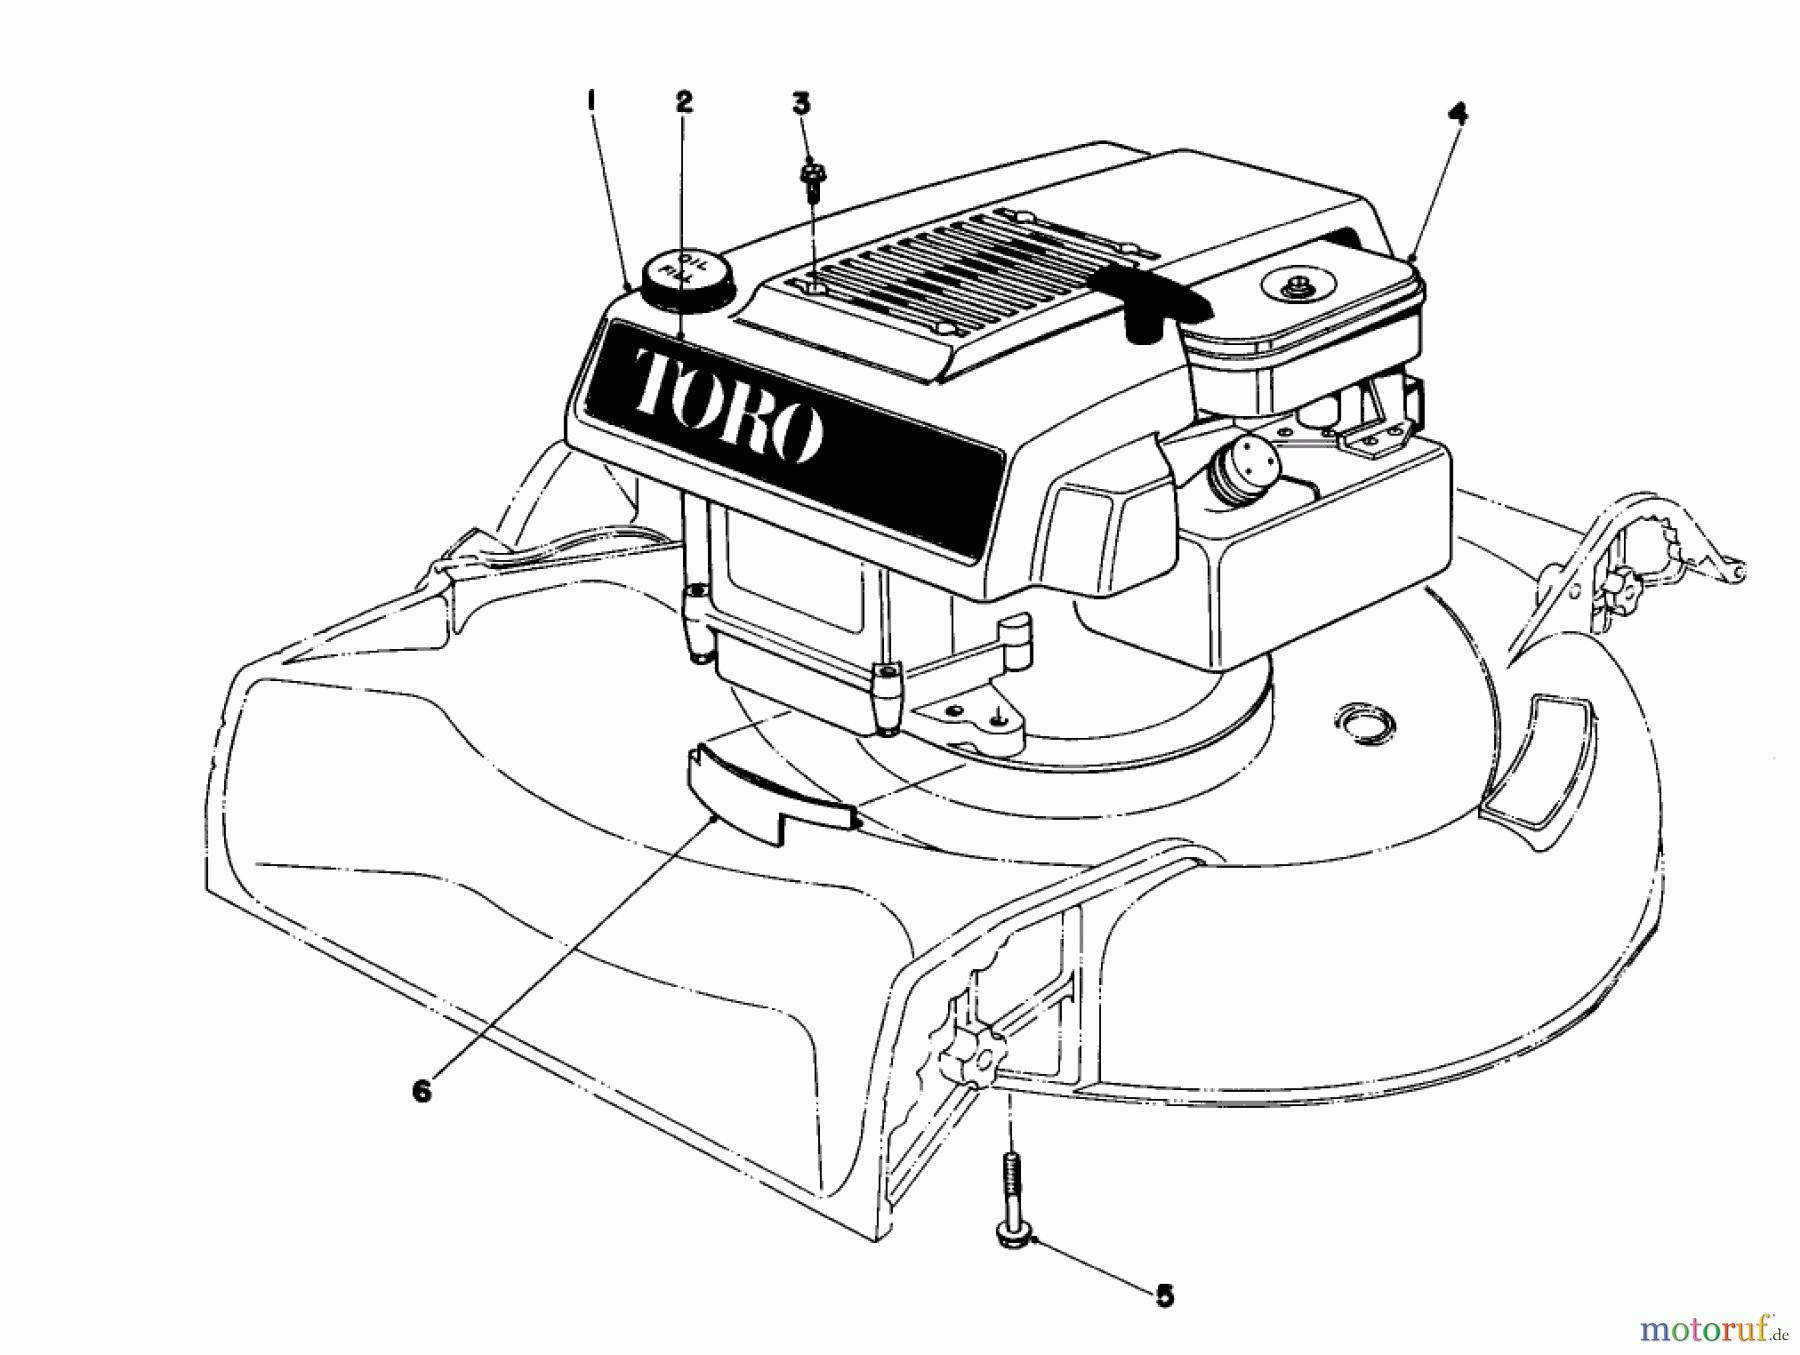  Toro Neu Mowers, Walk-Behind Seite 1 16370 - Toro Whirlwind II Lawnmower, 1979 (9000001-9999999) ENGINE ASSEMBLY MODEL 16360 AND 16370